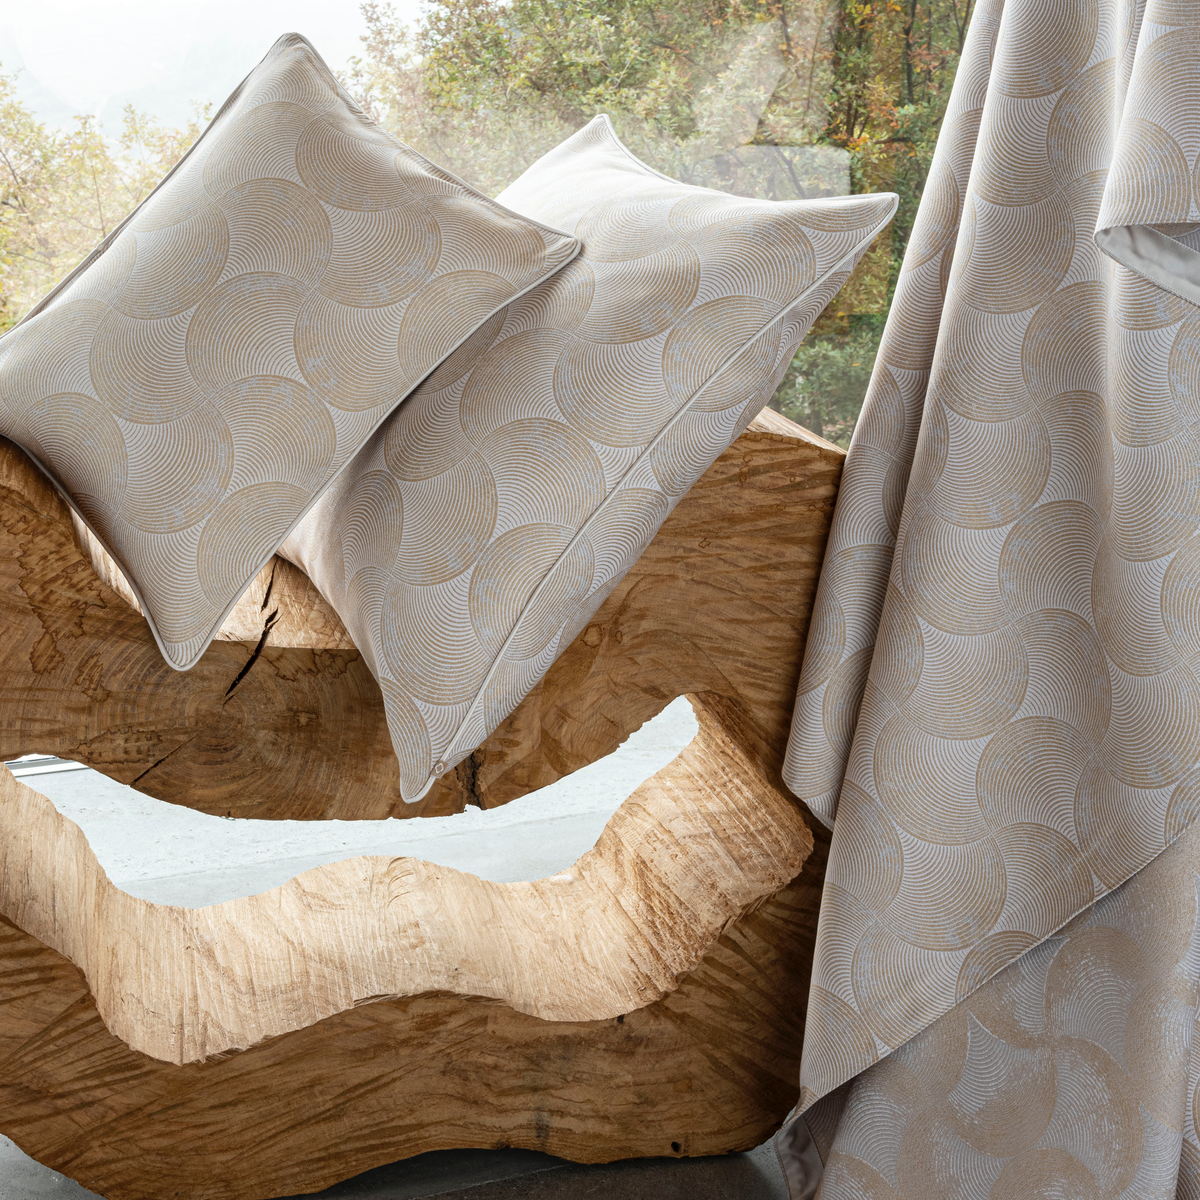 Celso de Lemos Caviar Bedding Sheet and Pillows on Wooden Decors  Miel